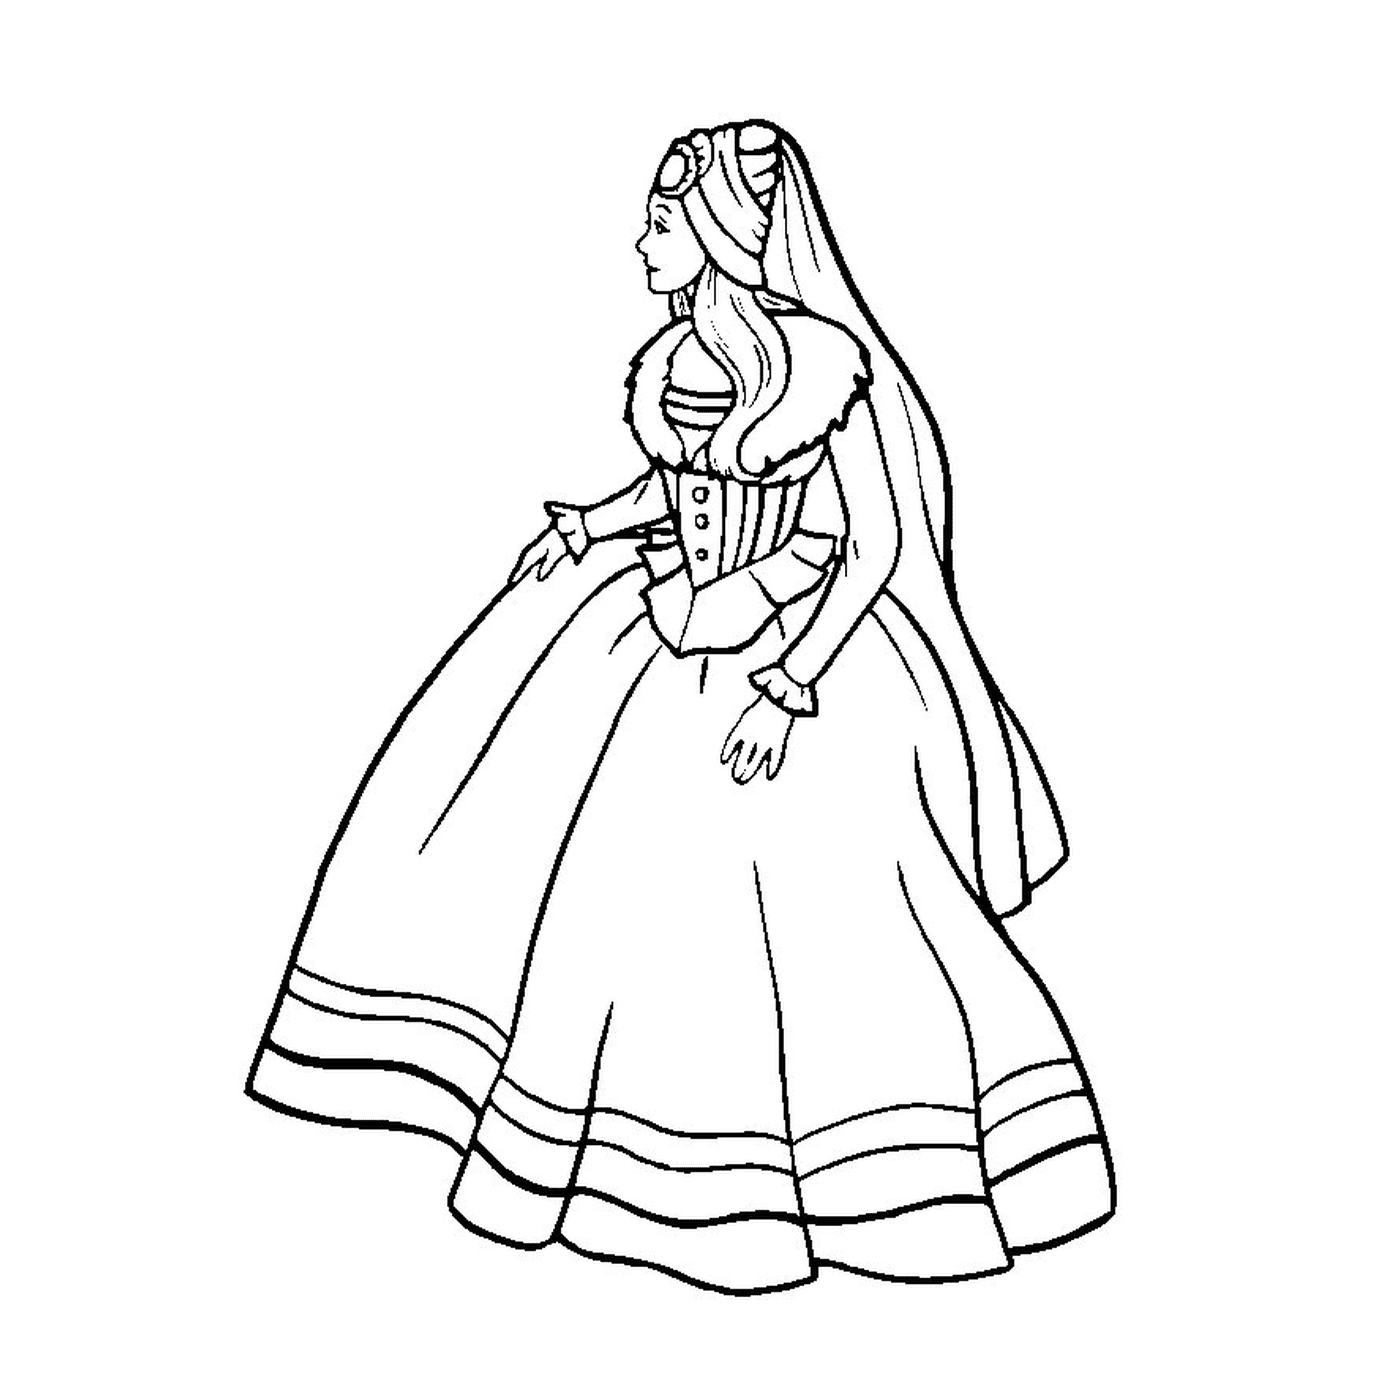  قلب أميرة (باربي) مع امرأة ترتدي فستاناً 